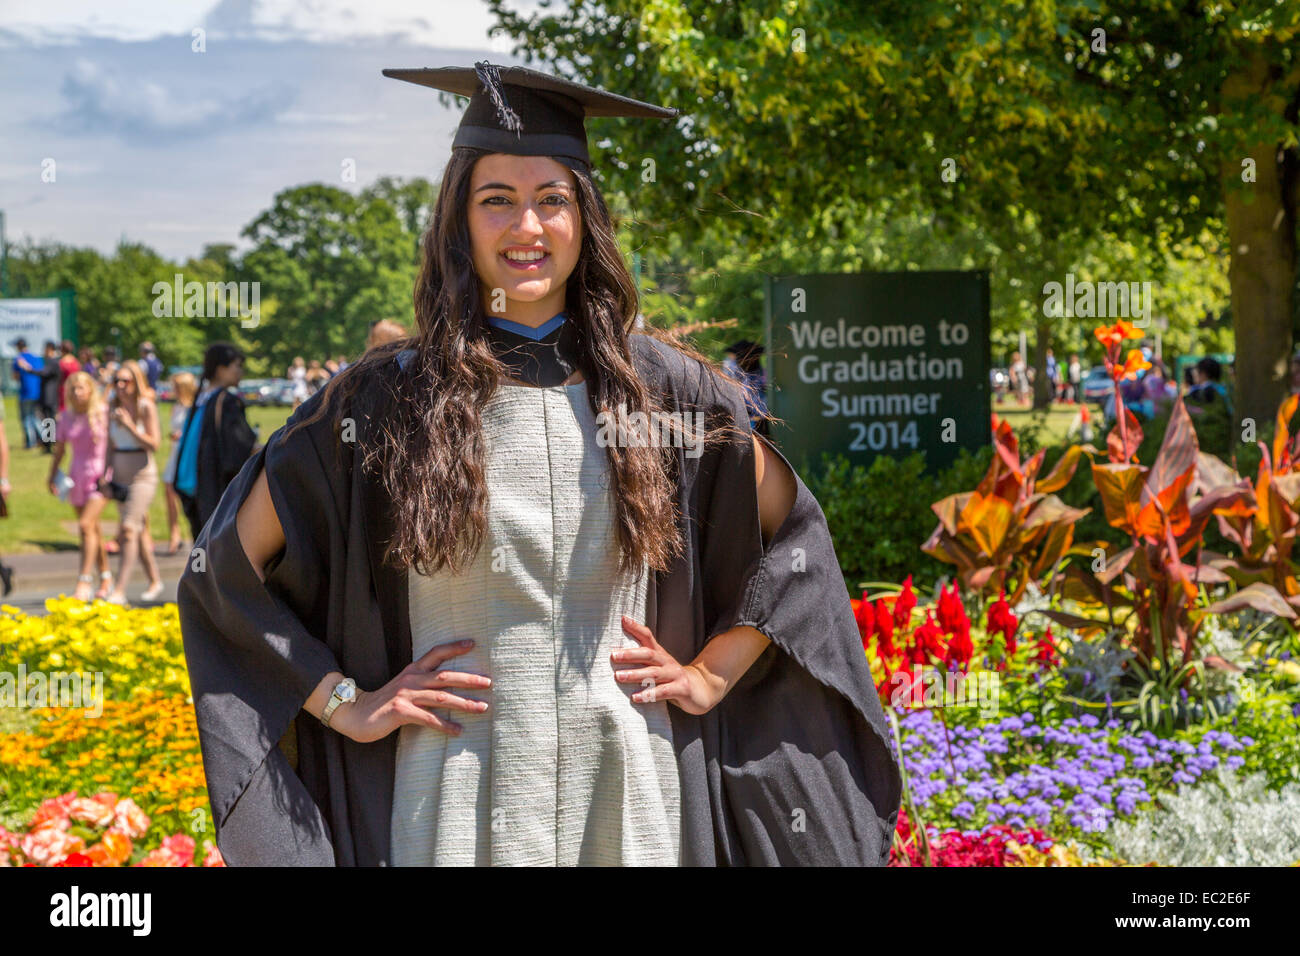 An image of a Female University Graduate on Graduation Summer Nottingham University England UK Stock Photo